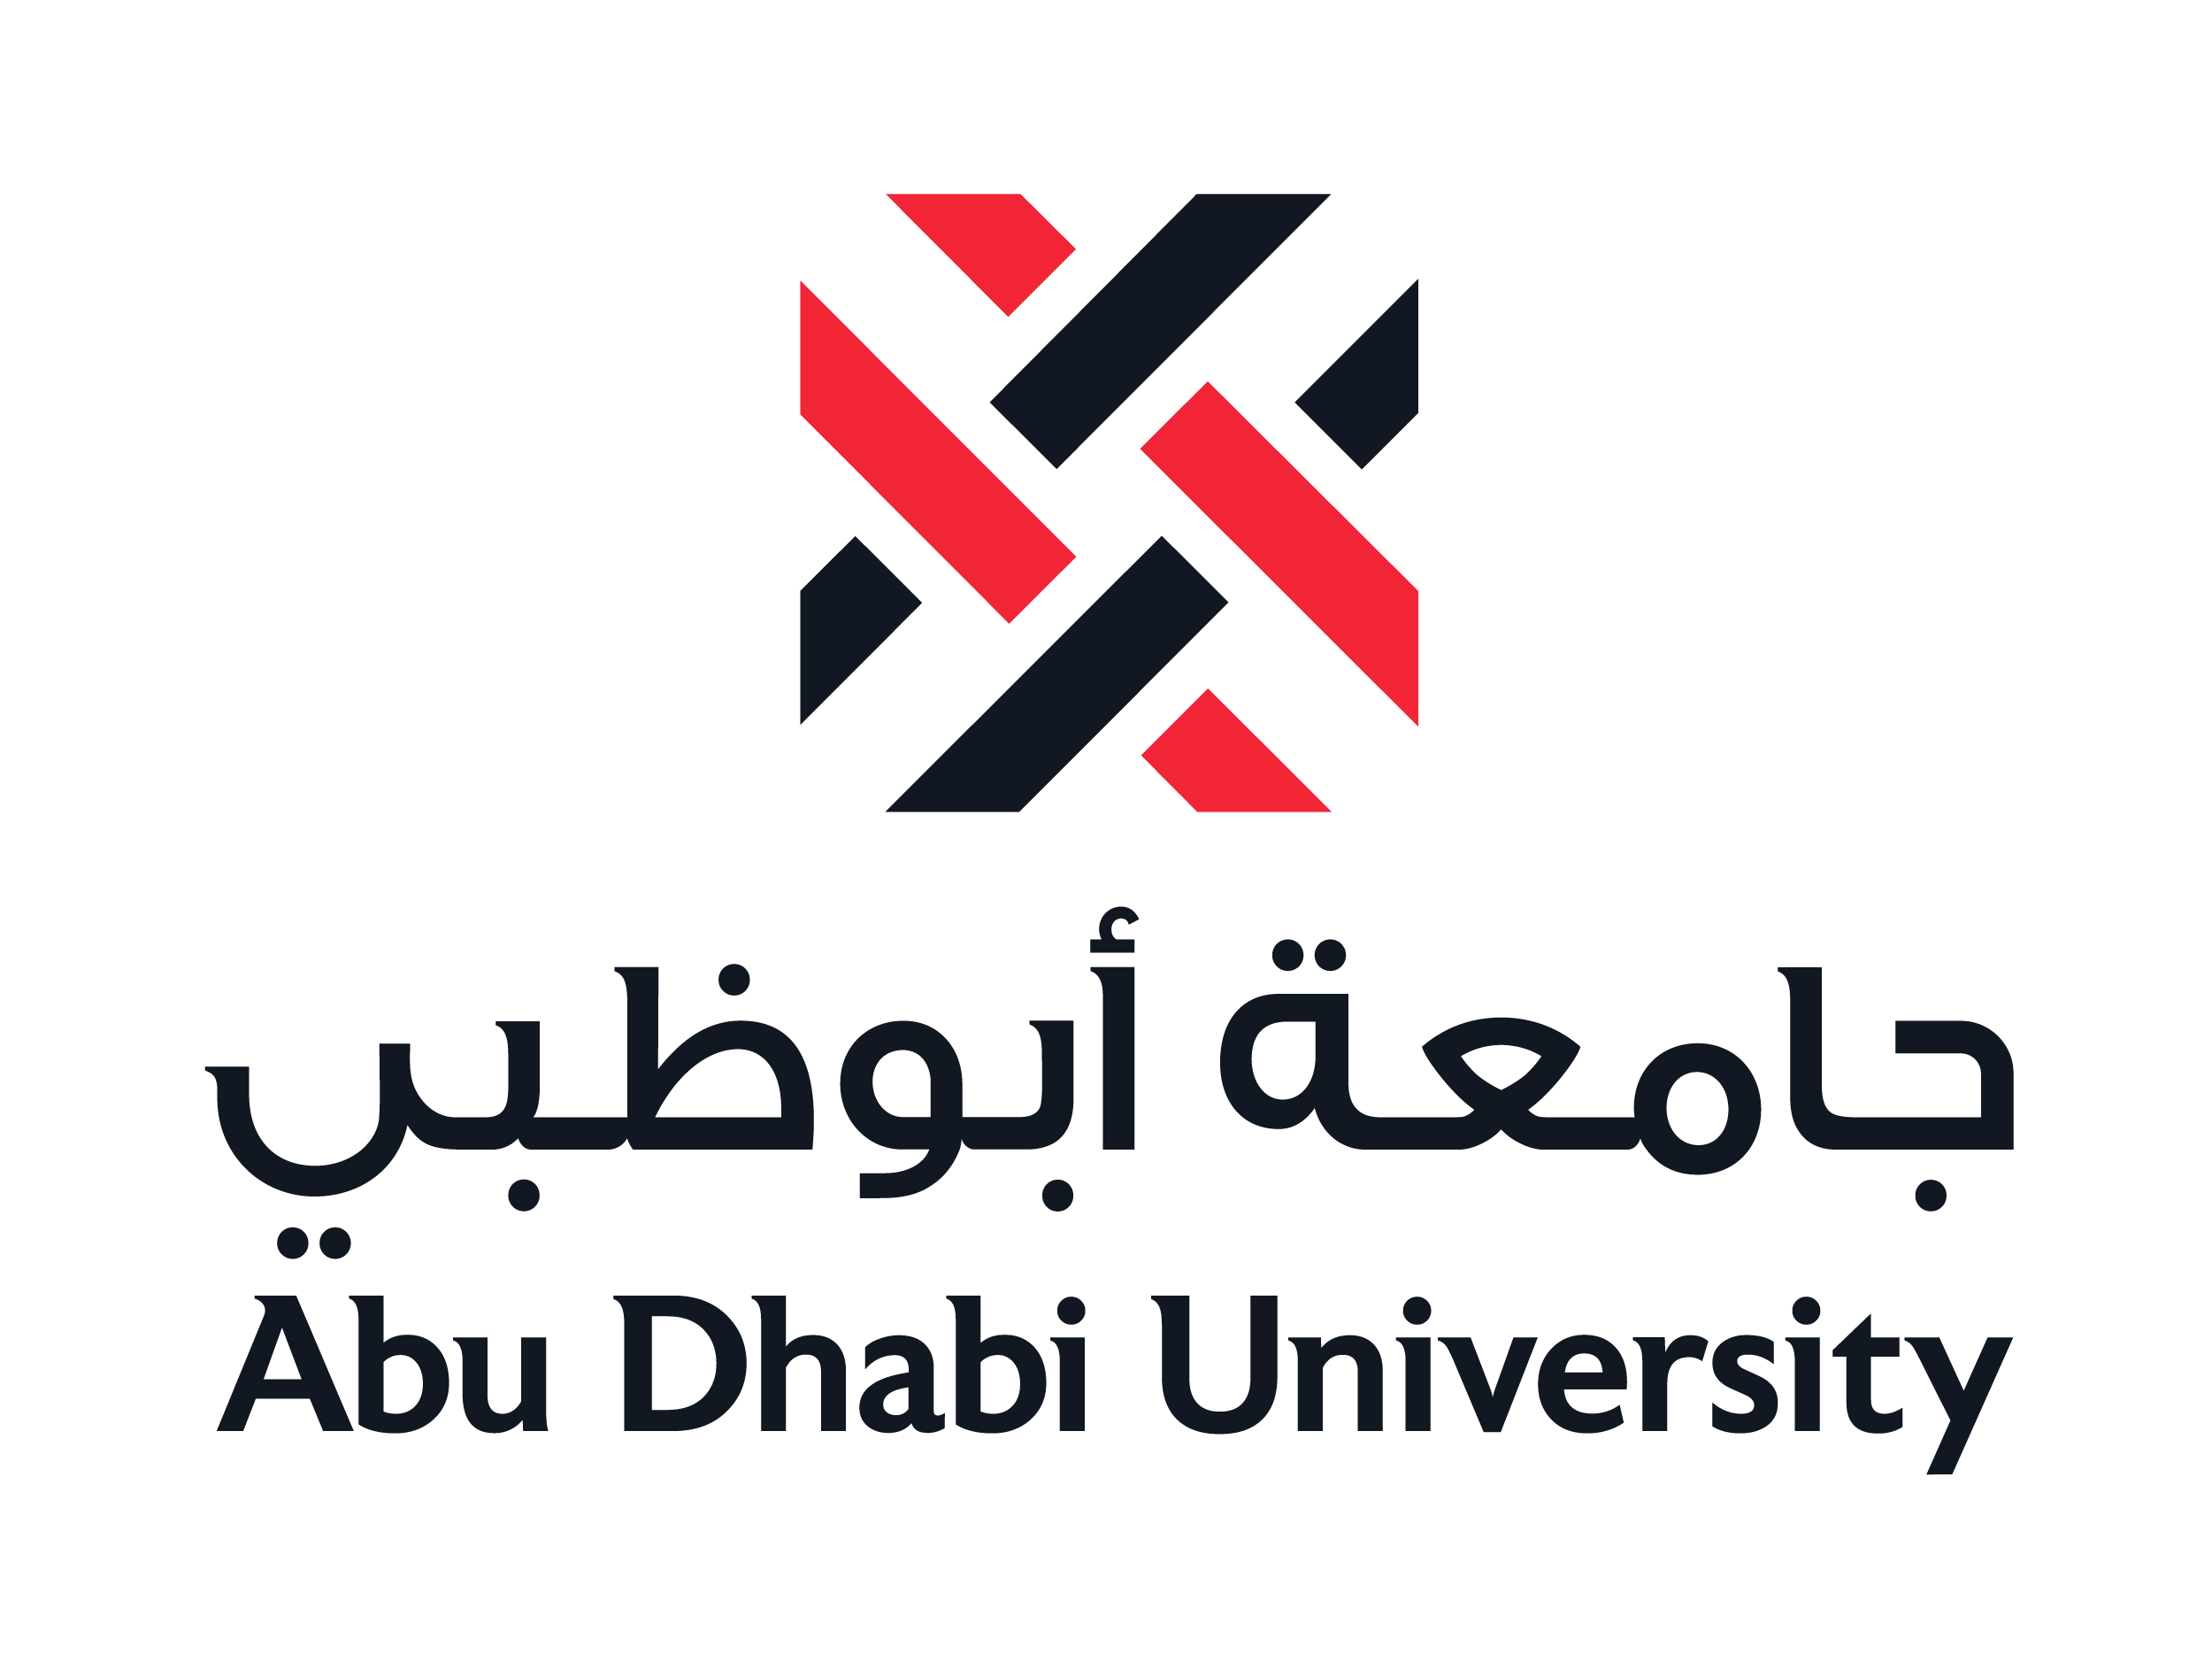 دانشگاه ابوظبی امارات